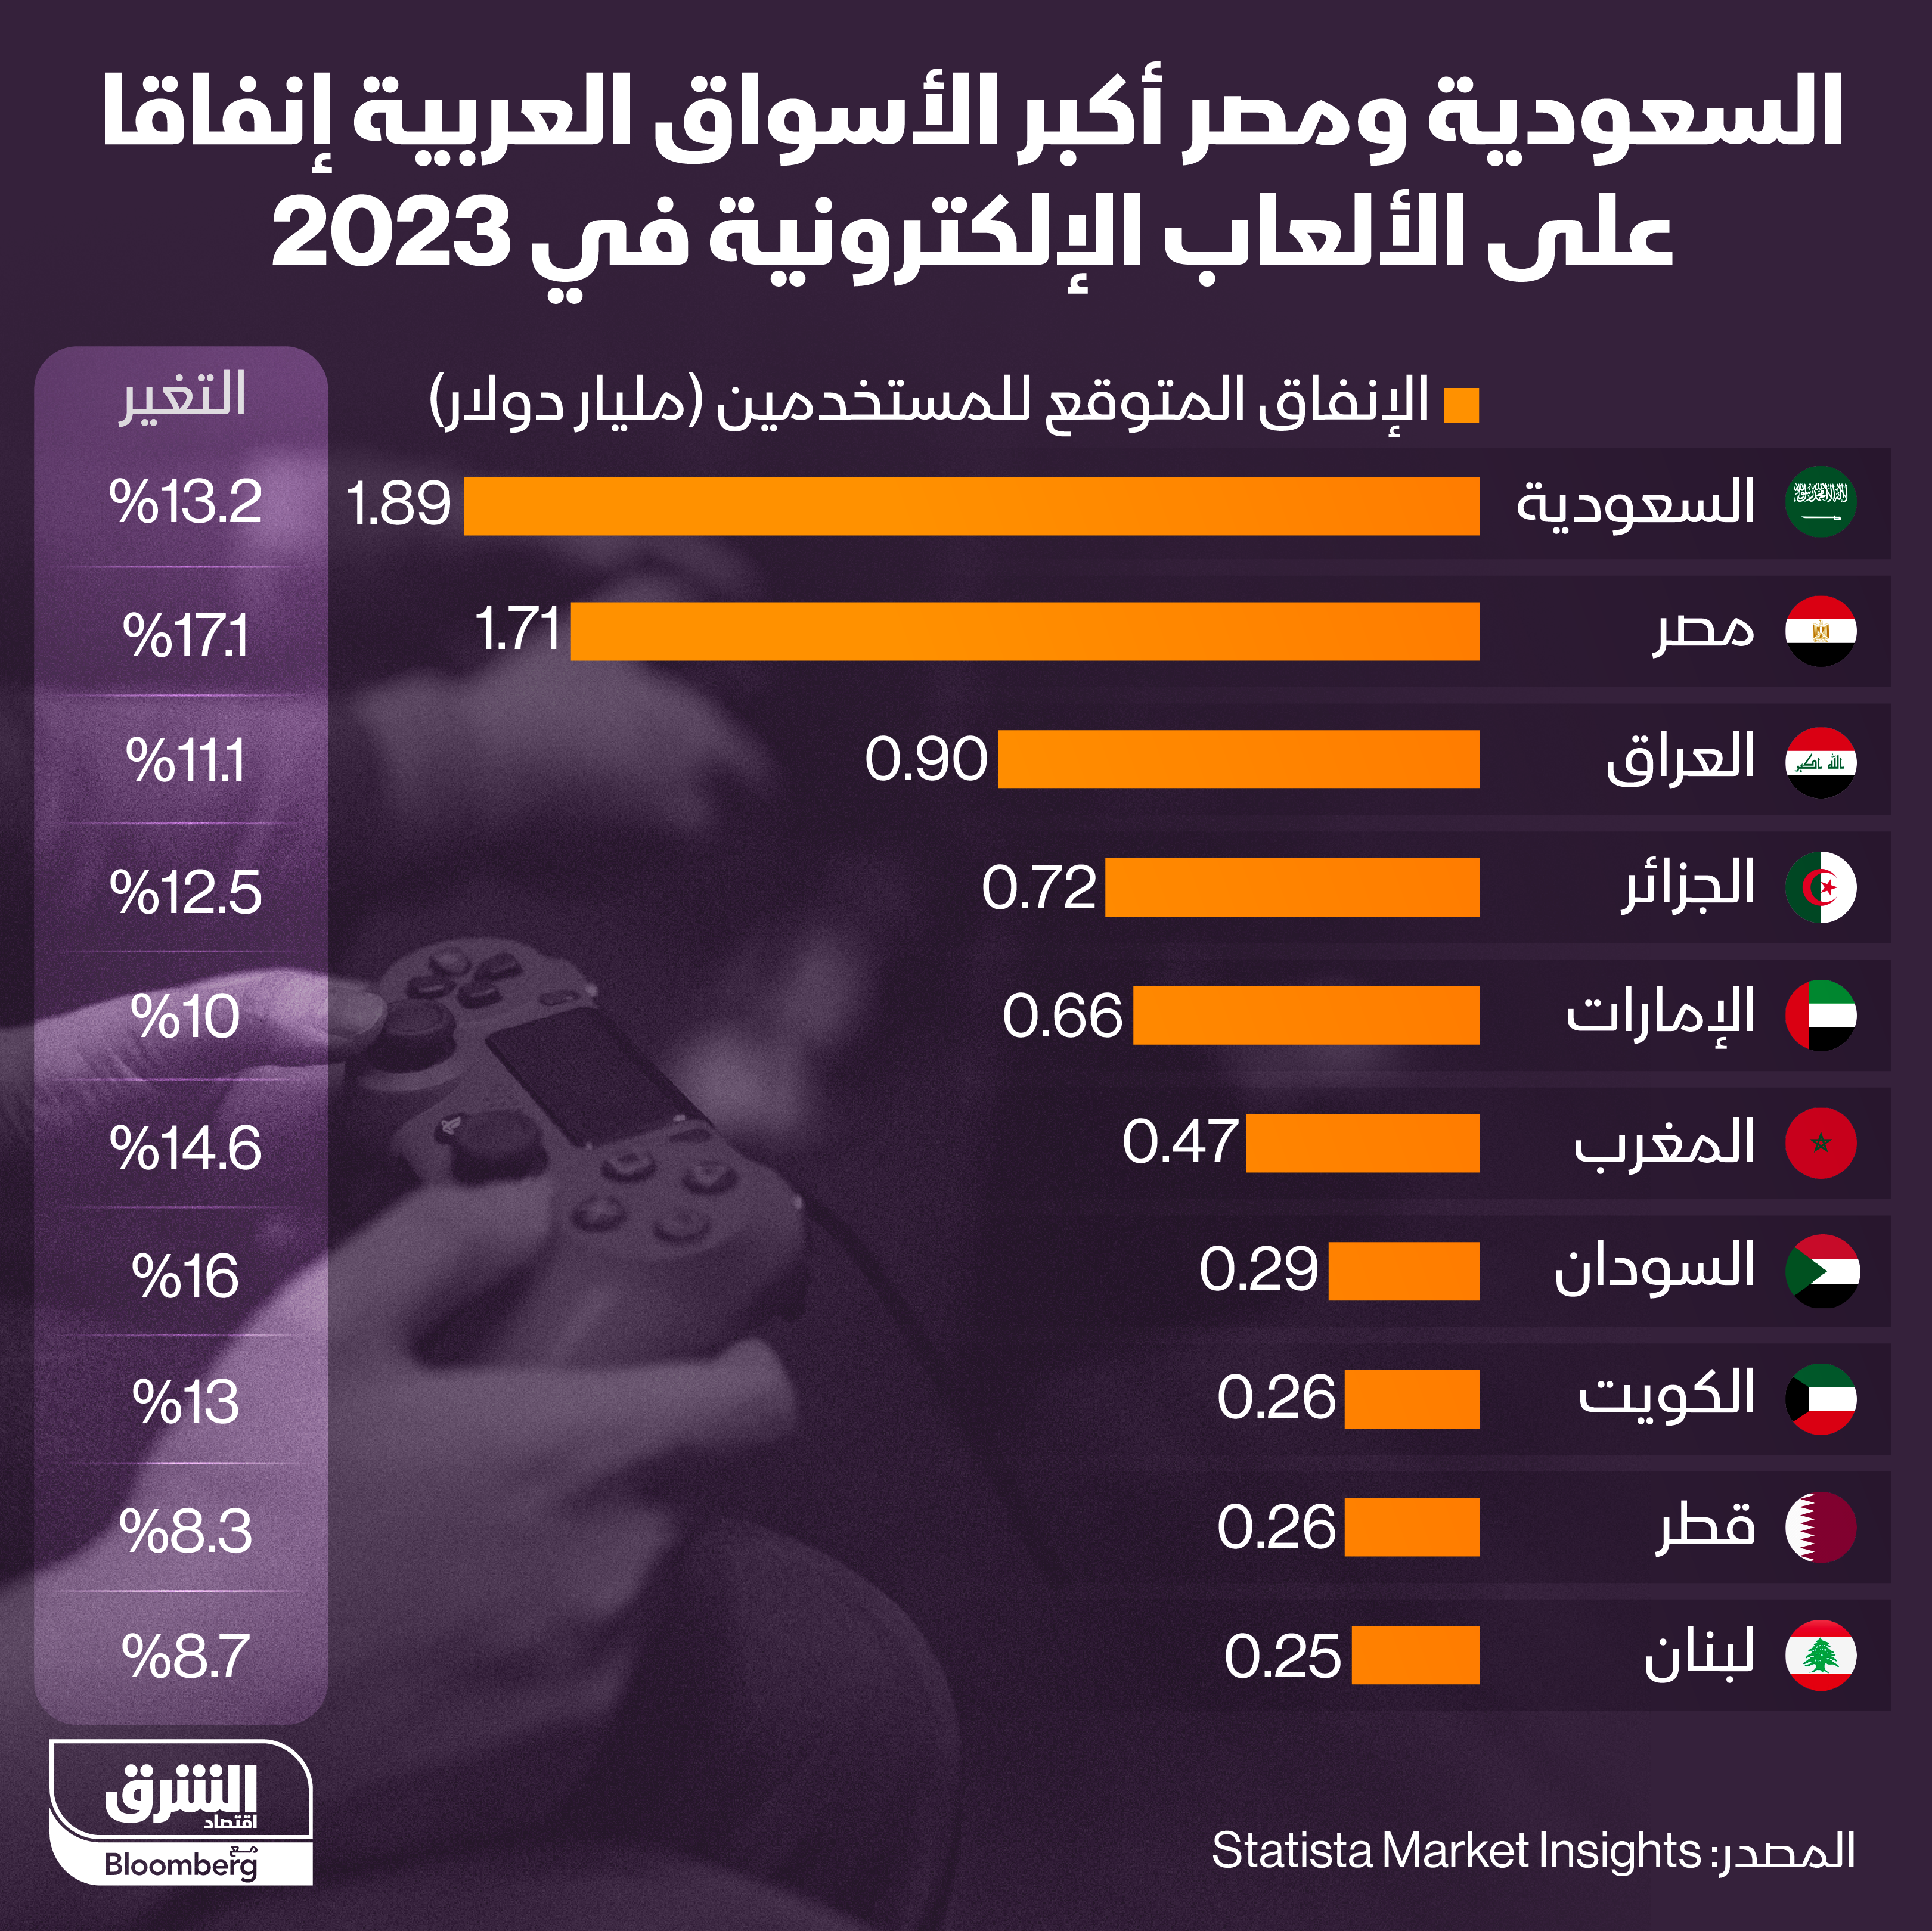 حجم إنفاق الدول العربية على الألعاب الإلكترونية في 2023